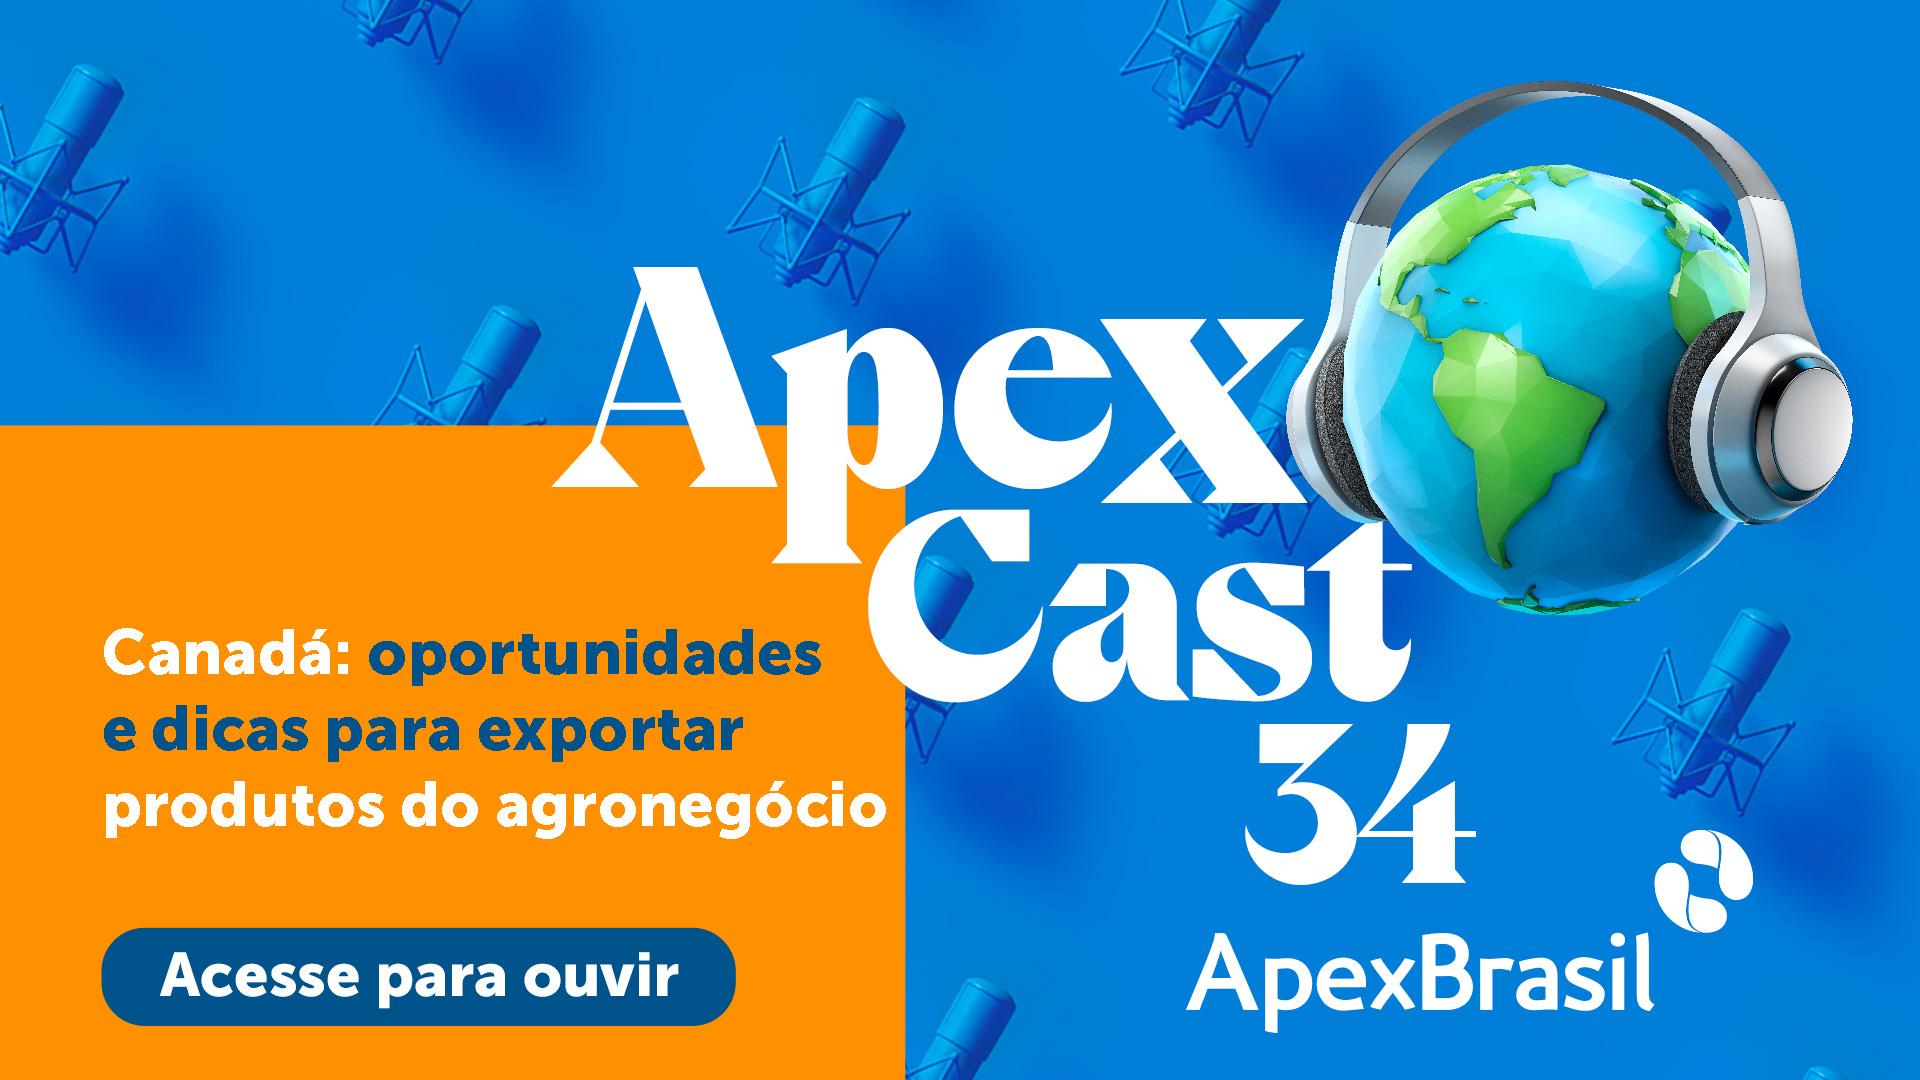 34º ApexCast traz informações para quem quer exportar para o Canadá